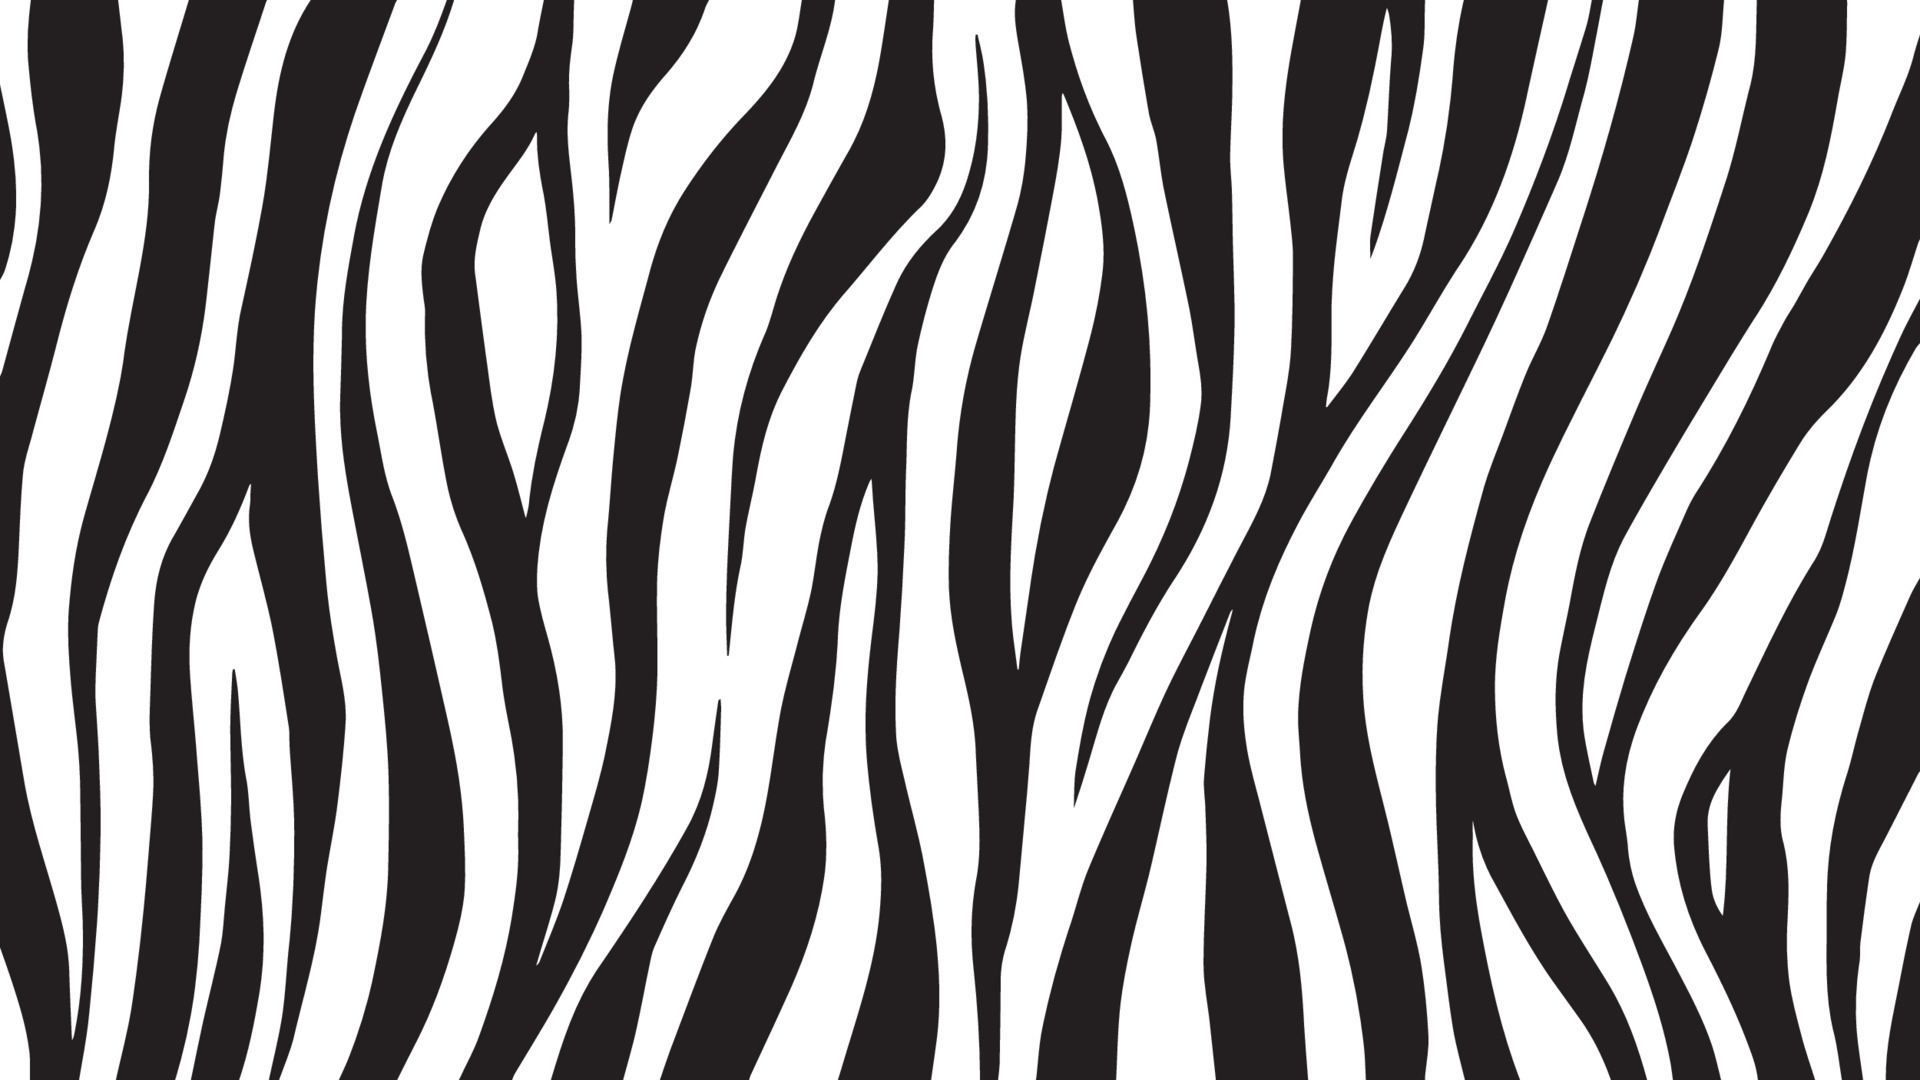 Zebra Stripes Nail Art Design - wide 4